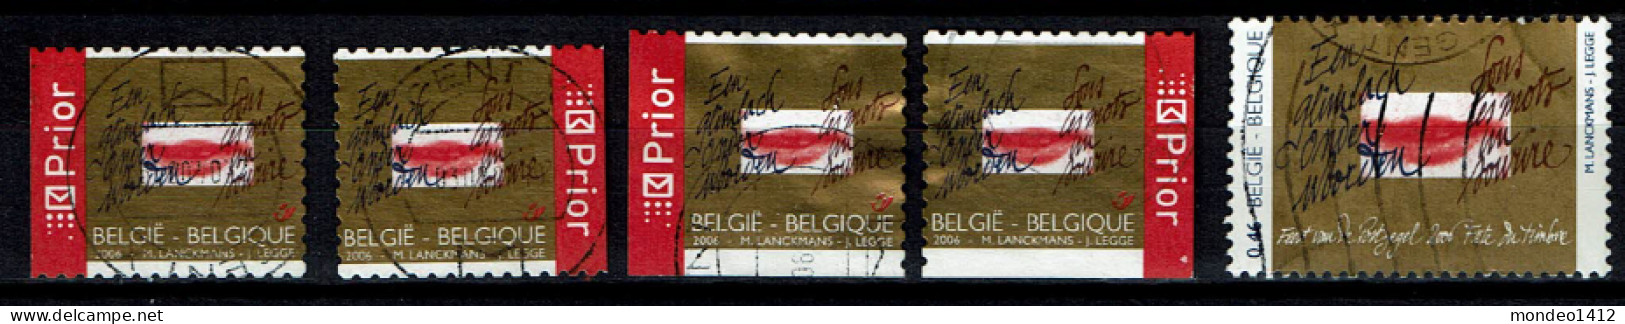 België OBP 3498/3499 - Day Of The Stamp - Gebruikt